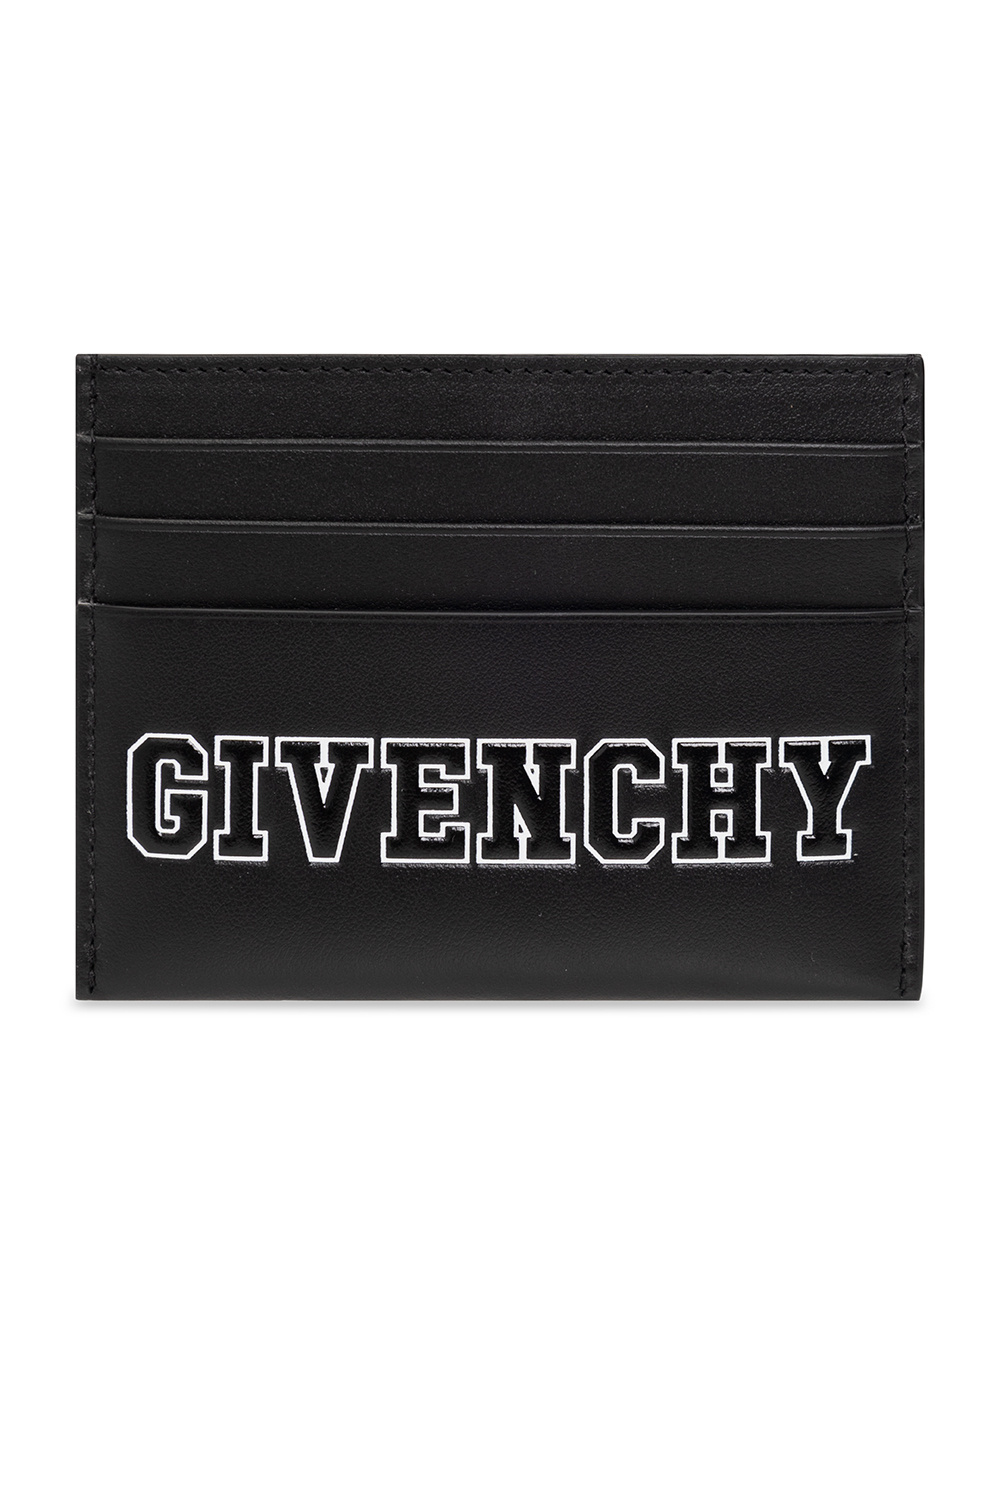 Givenchy Kanye West est arrivé au défilé Givenchy pour la New York Fashion Week avec les